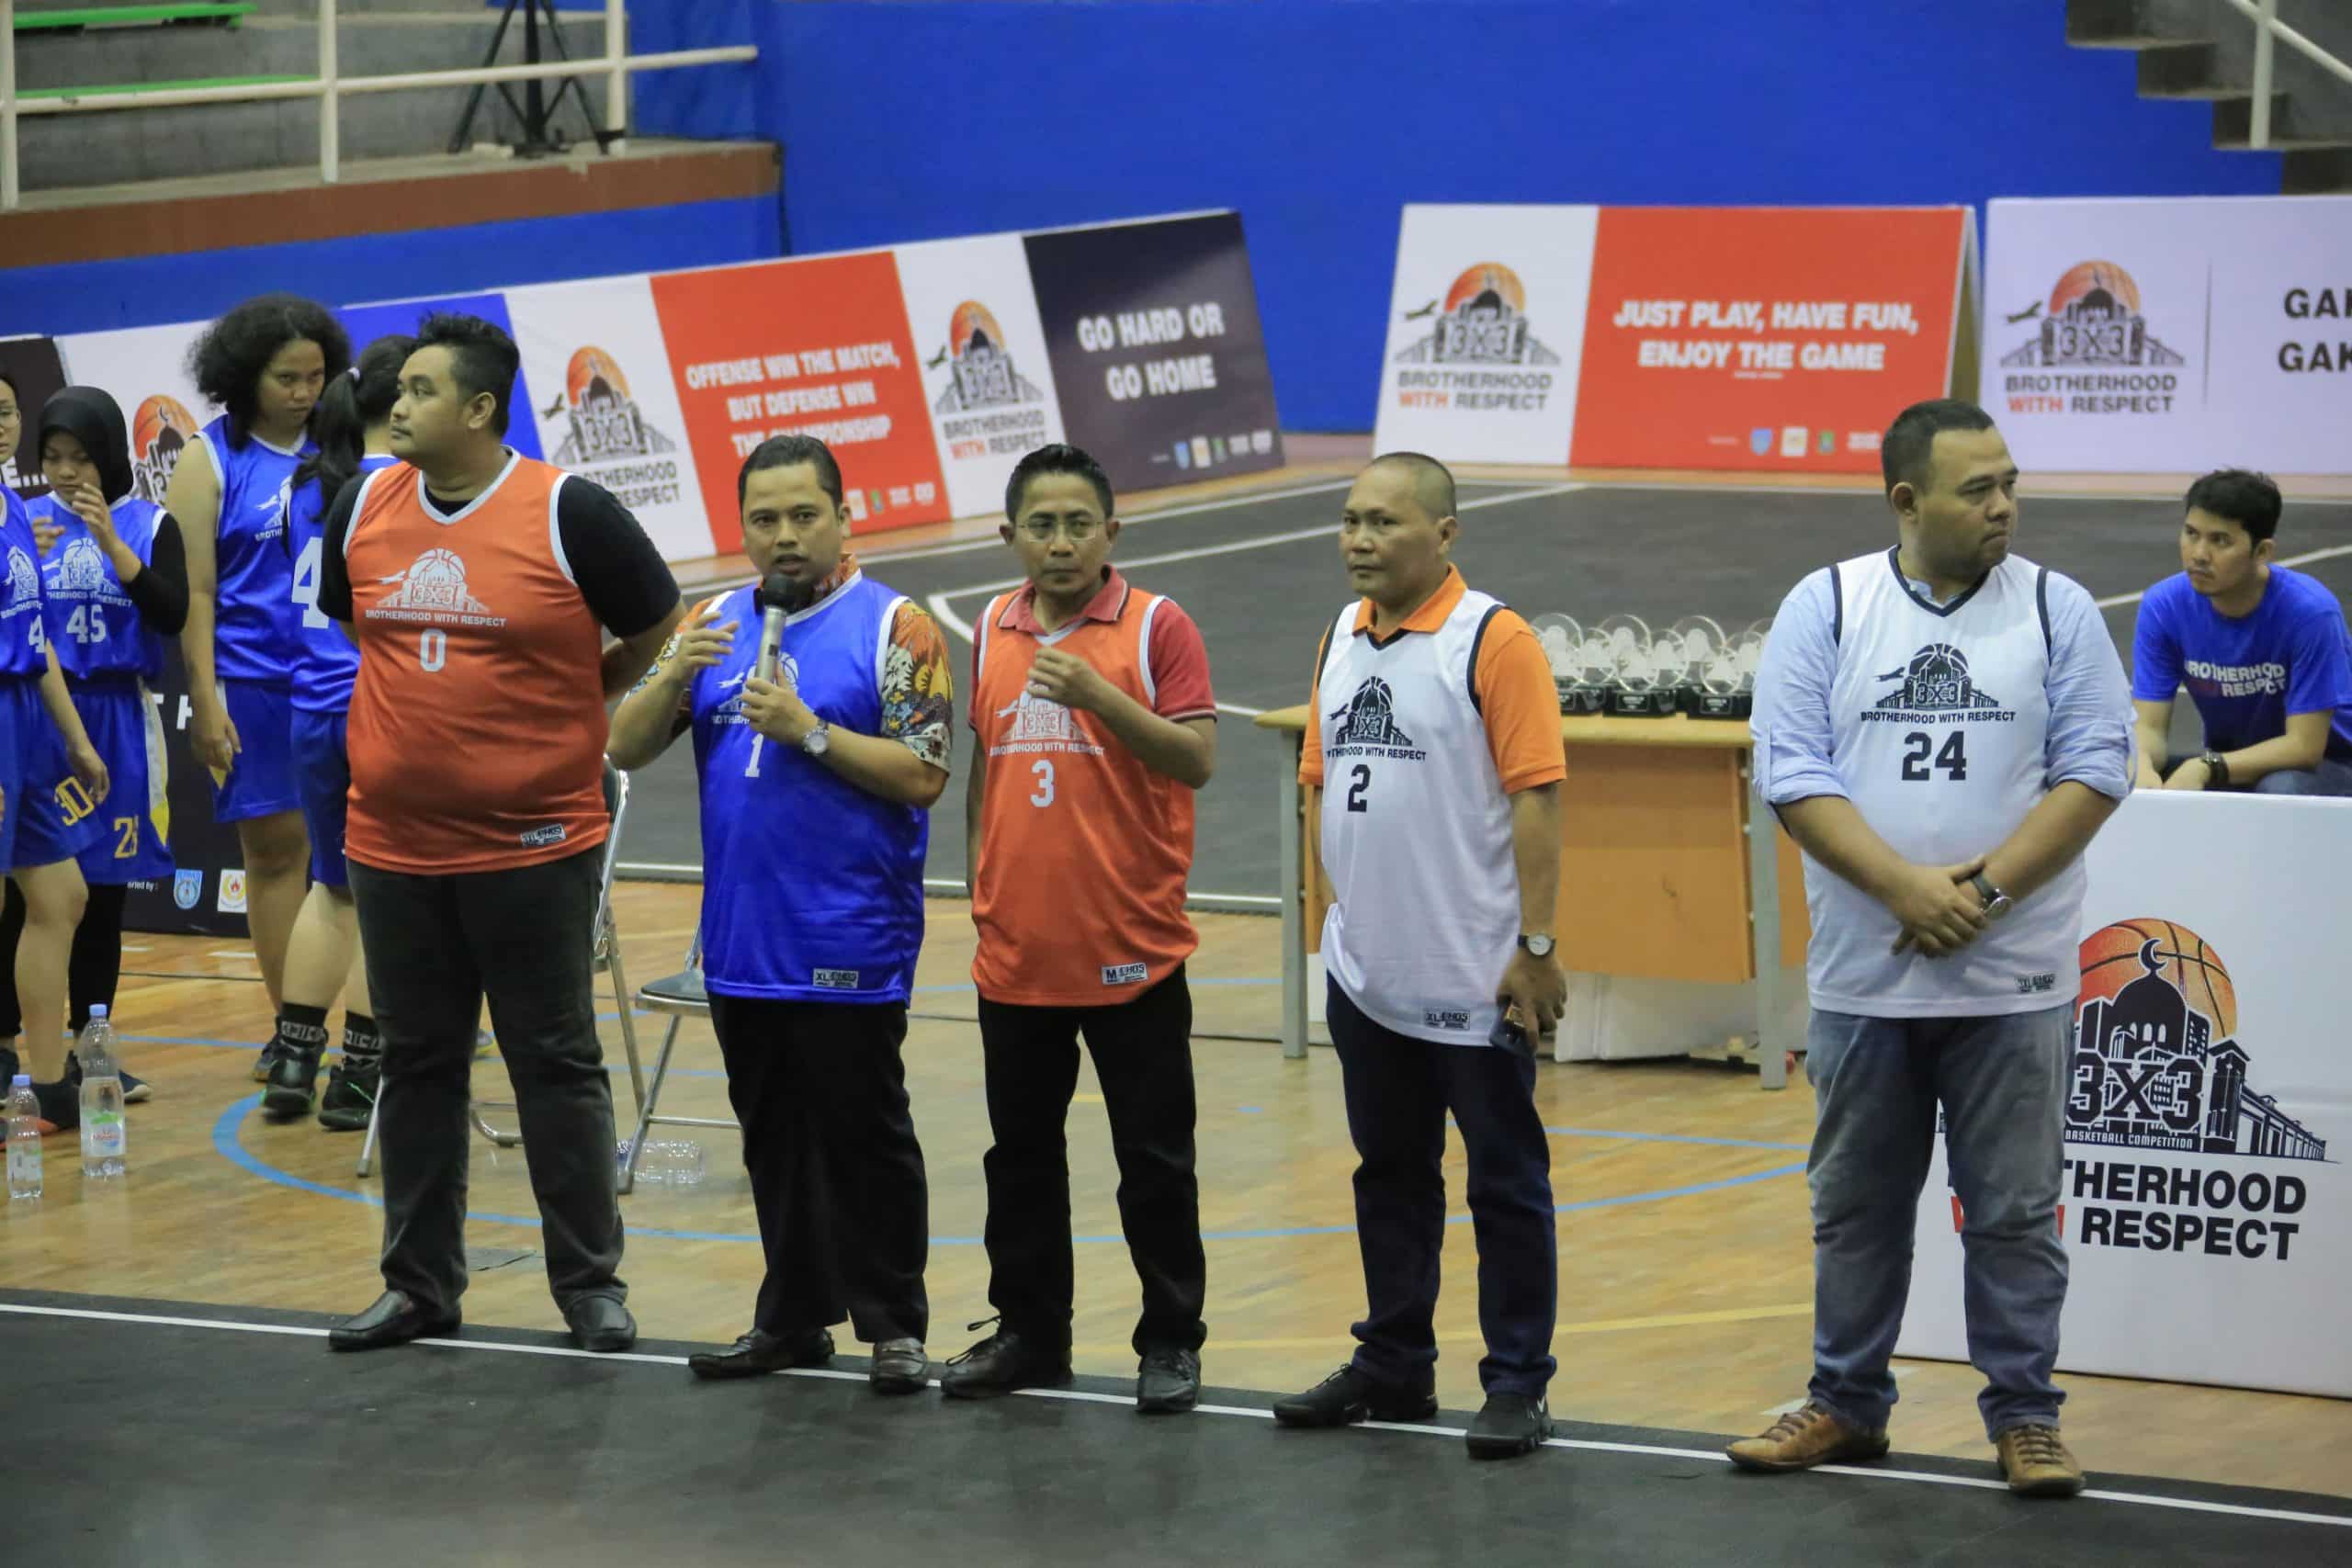 Wali Kota Tangerang Akan Roadshow Kenalkan Olahraga ke Tiap Sekolah